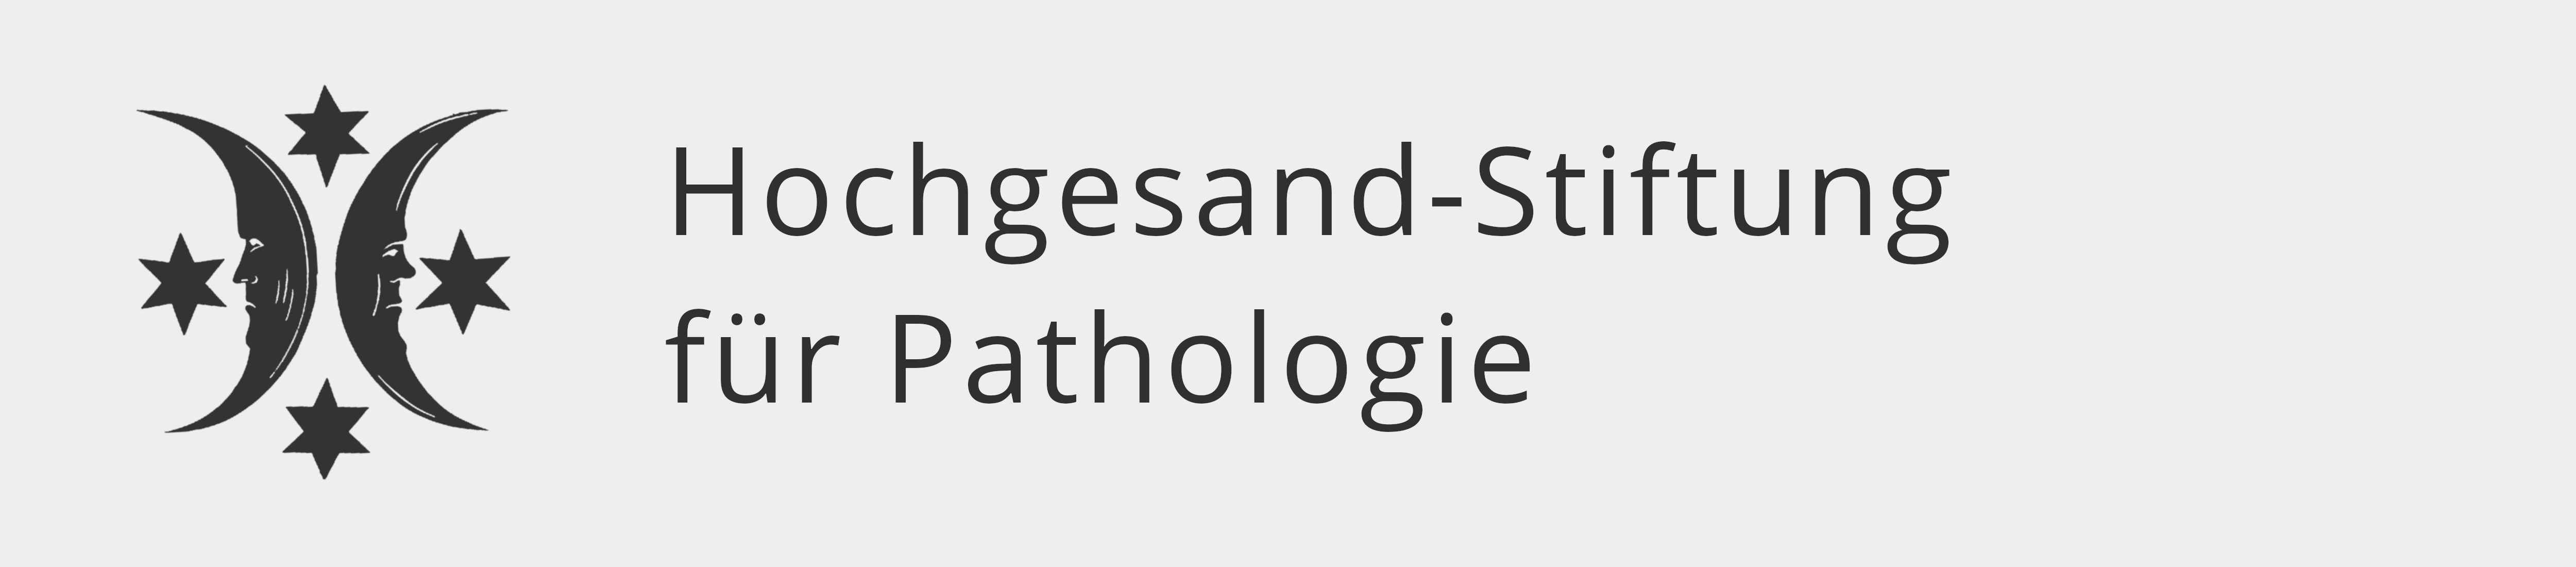 Hochgesand-Stiftung für Pathologie